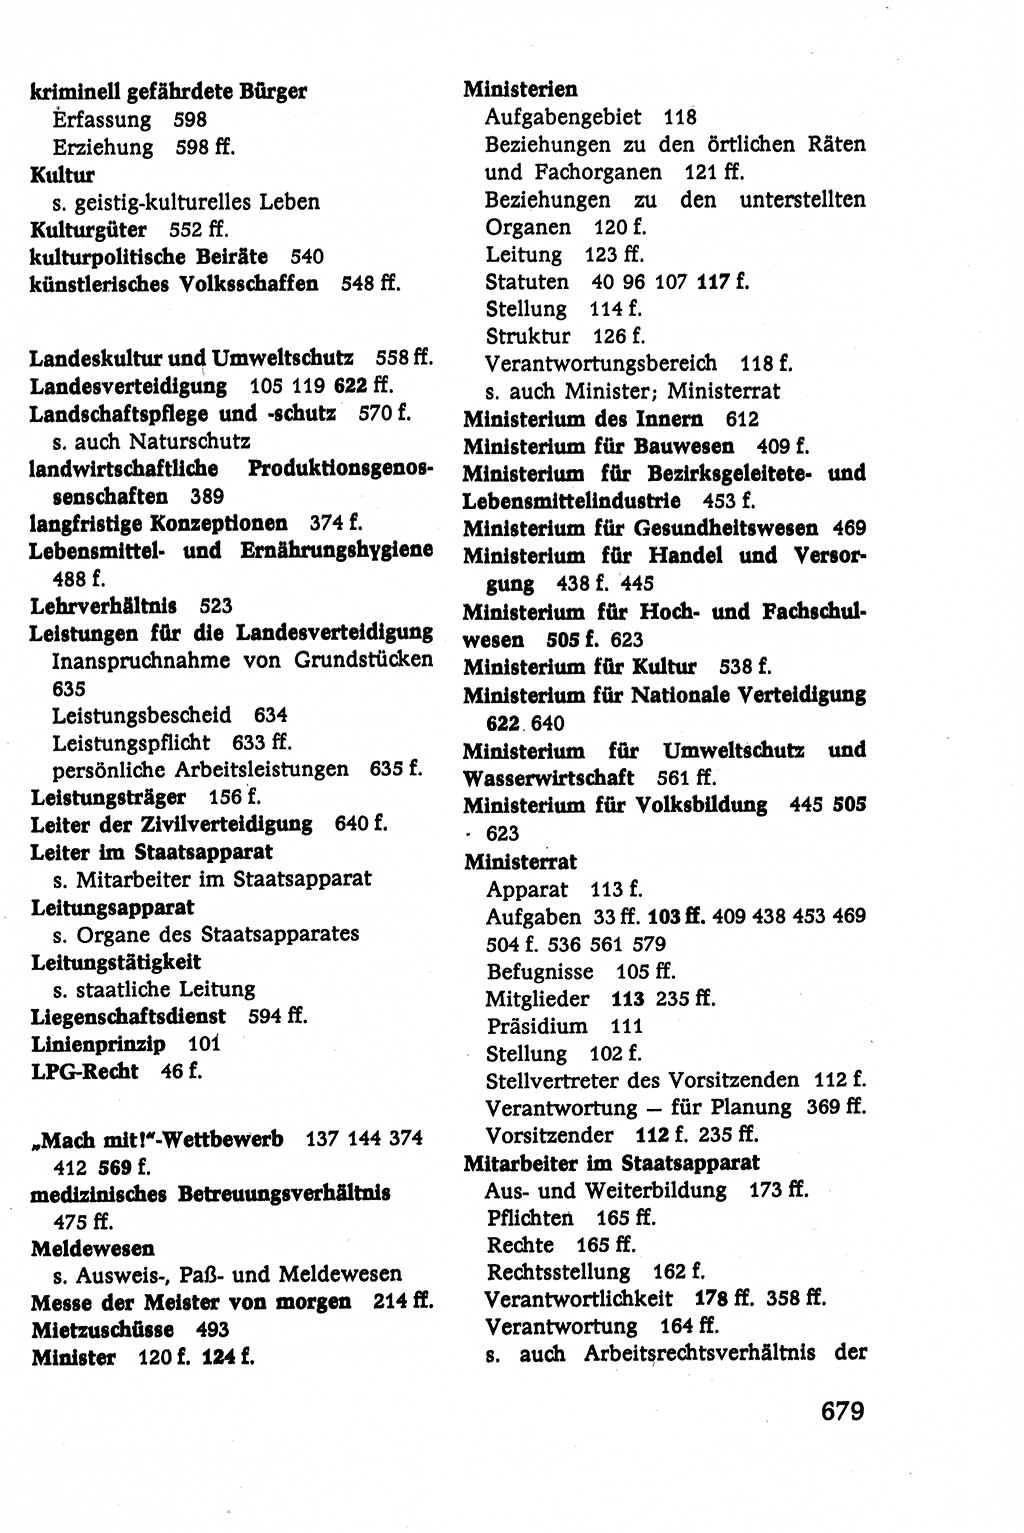 Verwaltungsrecht [Deutsche Demokratische Republik (DDR)], Lehrbuch 1979, Seite 679 (Verw.-R. DDR Lb. 1979, S. 679)